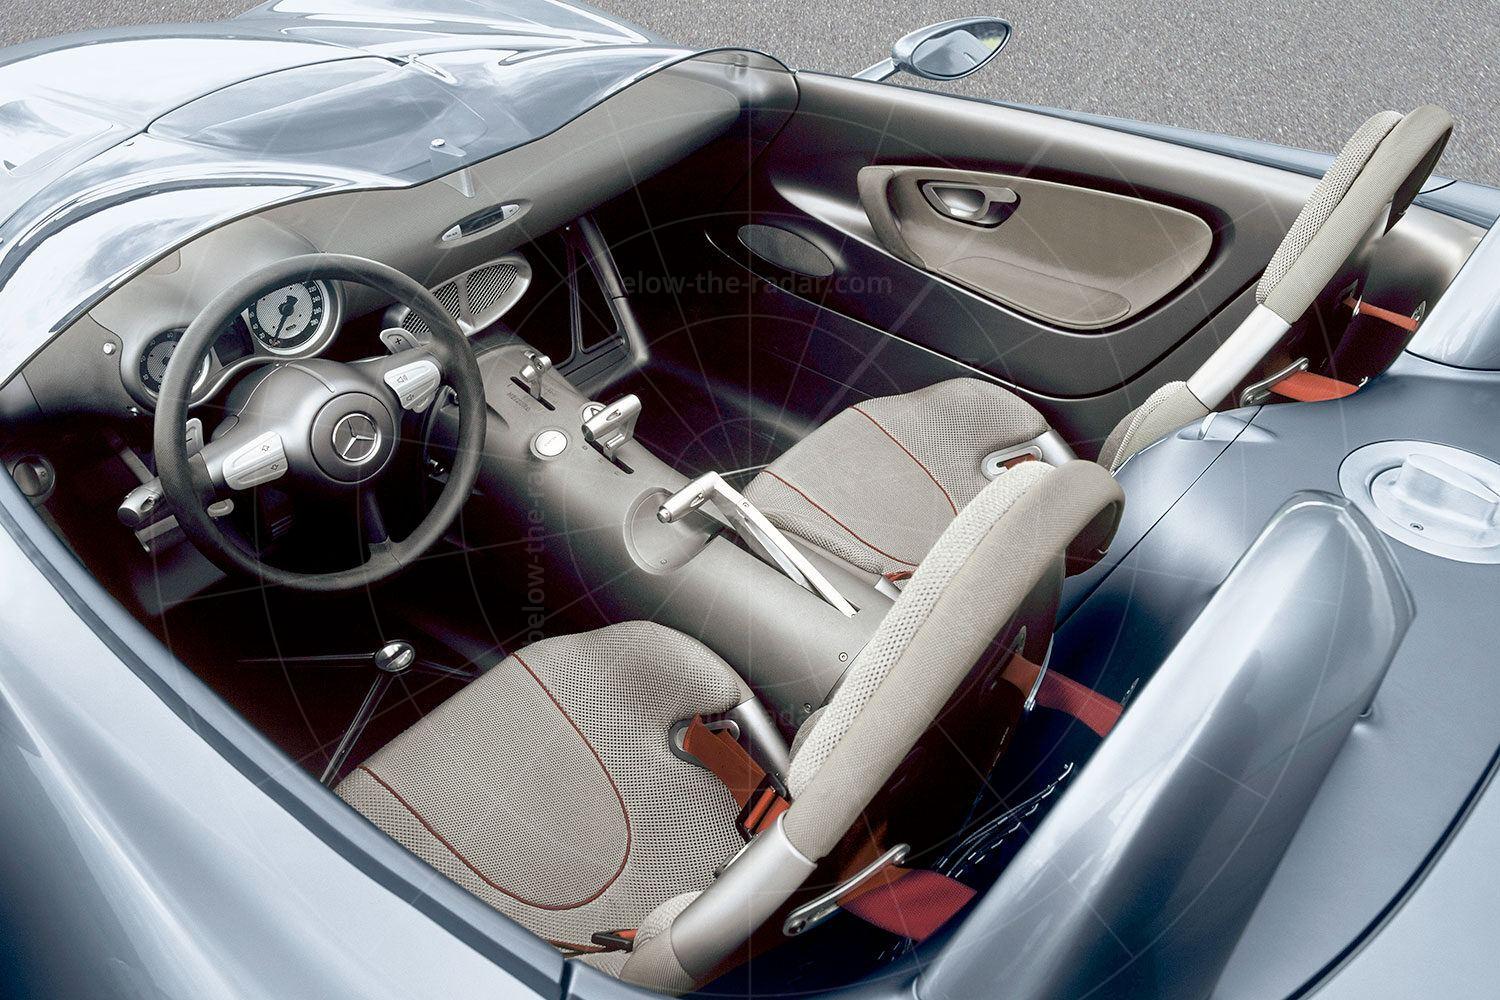 Mercedes F400 Carving interior Pic: Mercedes | Mercedes F400 Carving interior